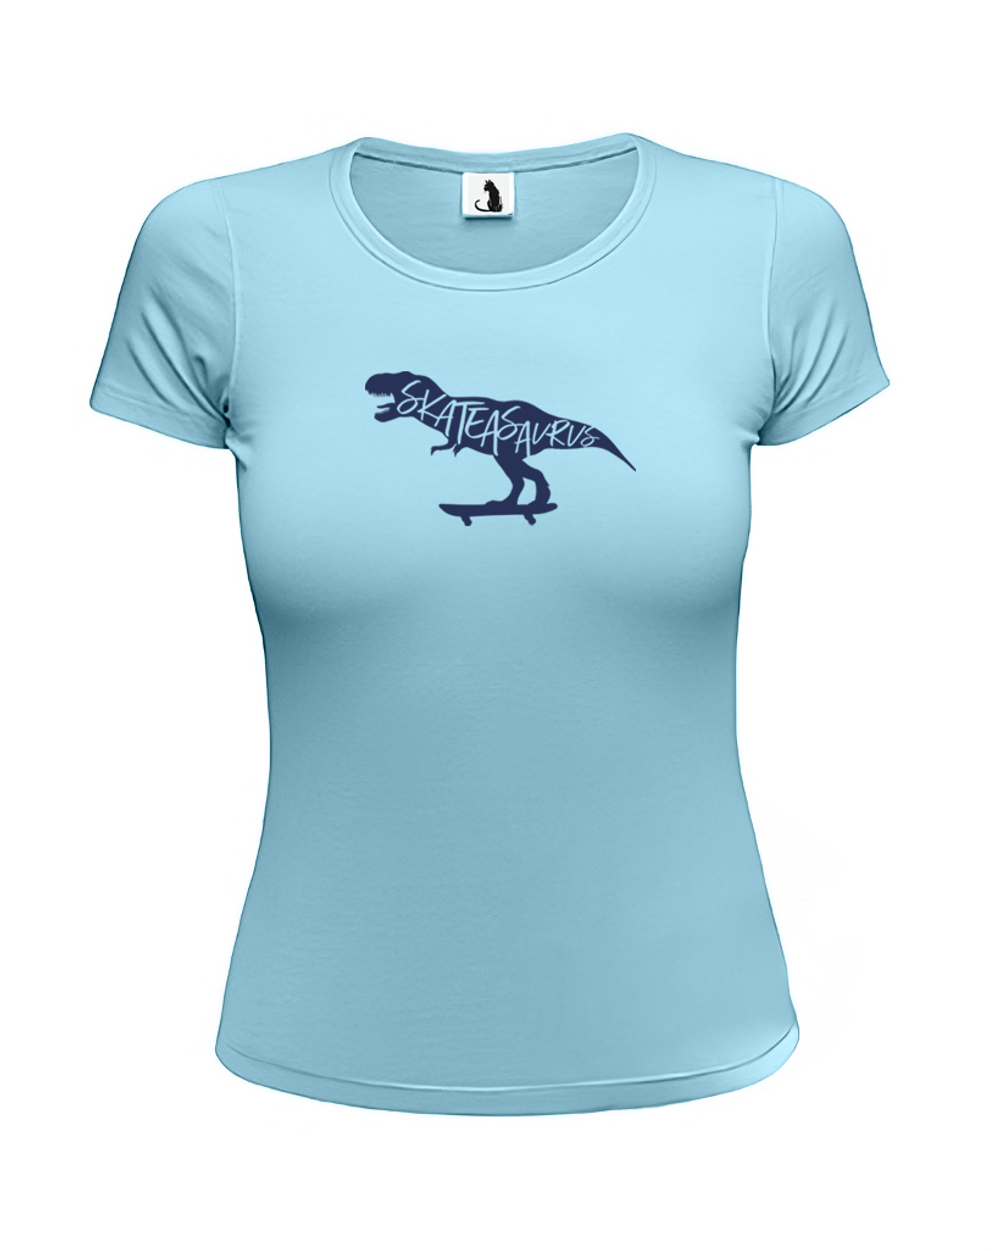 Футболка Skateasaurus женская приталенная голубая с синим рисунком